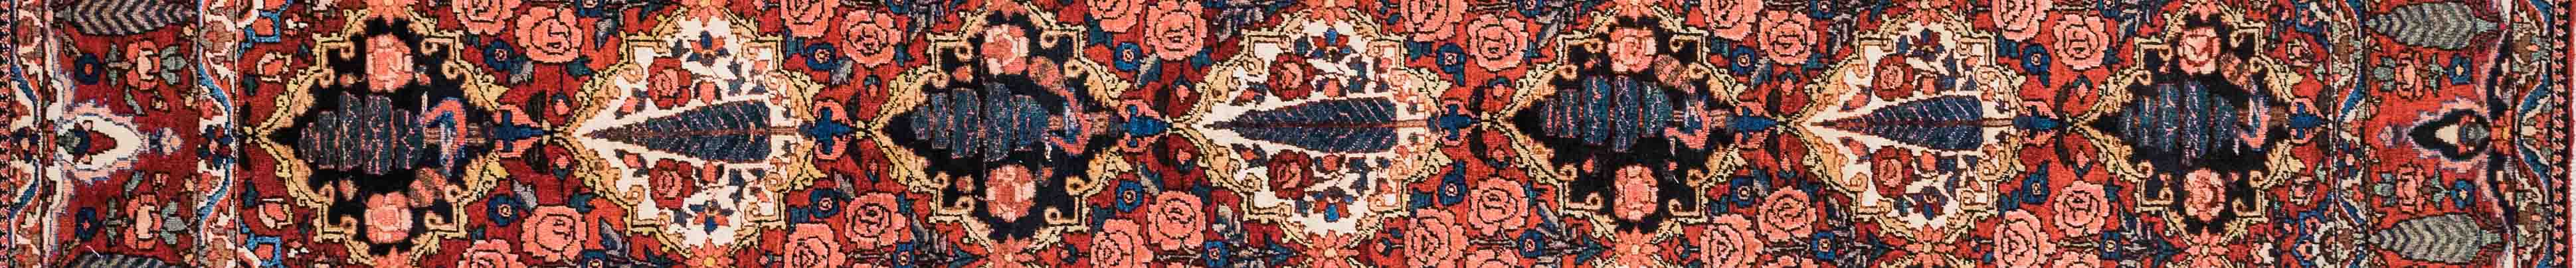 Bakhtiar Persian Carpet Rug N1Carpet Canada Montreal Tapis Persan 3250